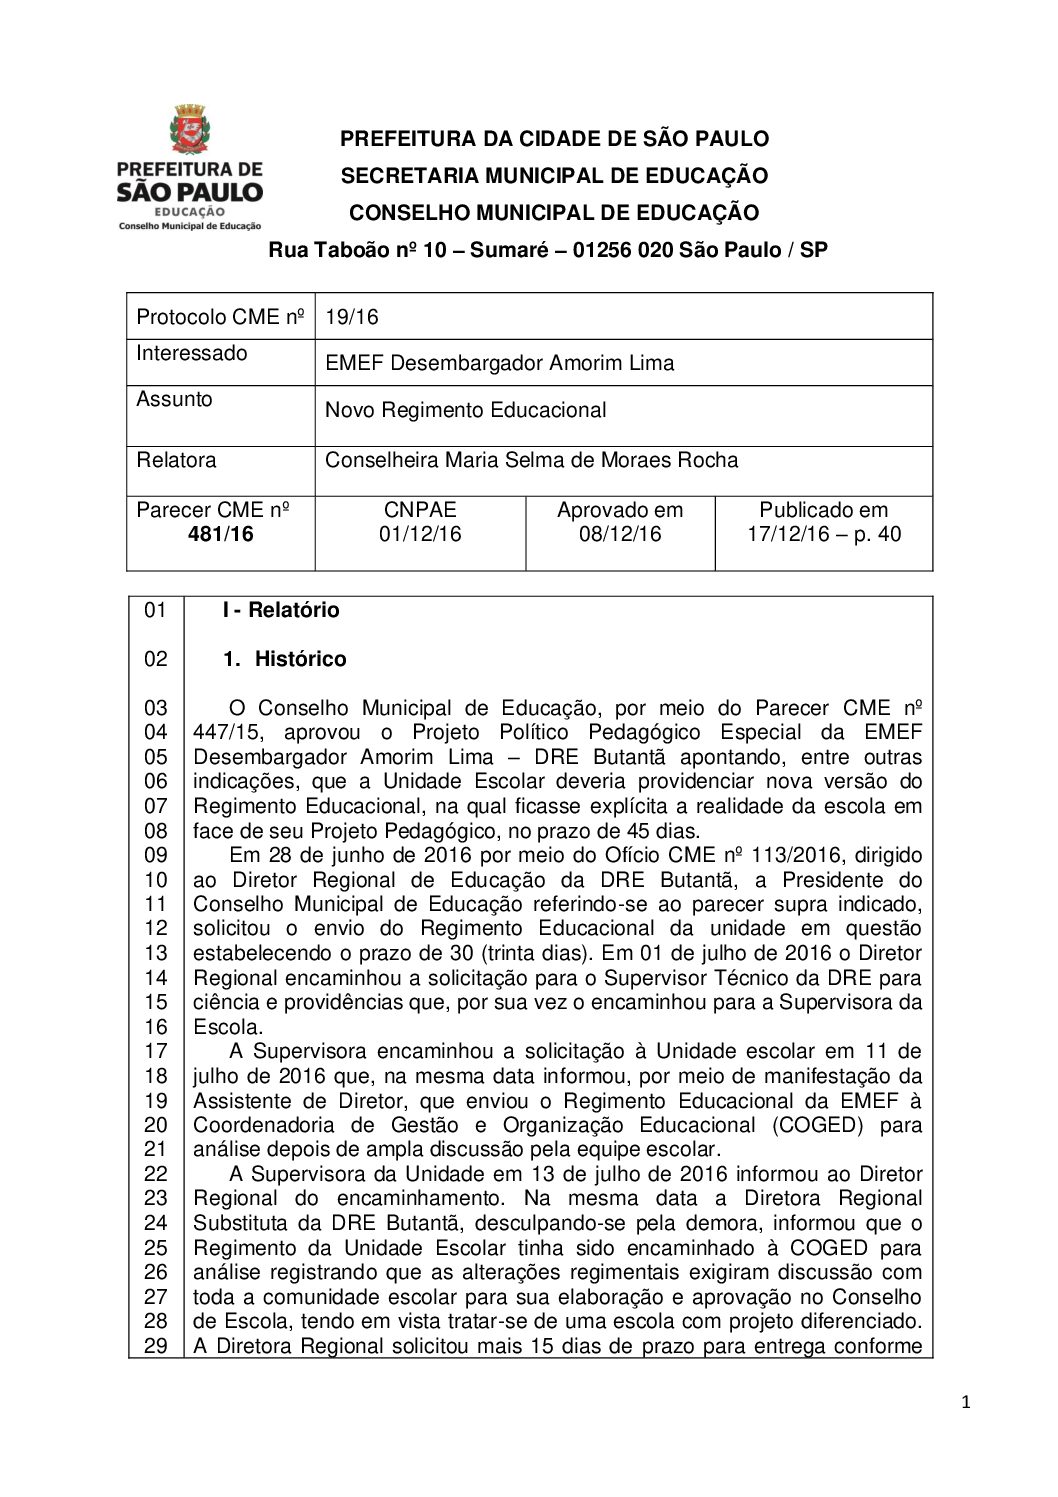 Parecer CME nº 481/2016 - EMEF Desembargador Amorim Lima - Novo Regimento Educacional 